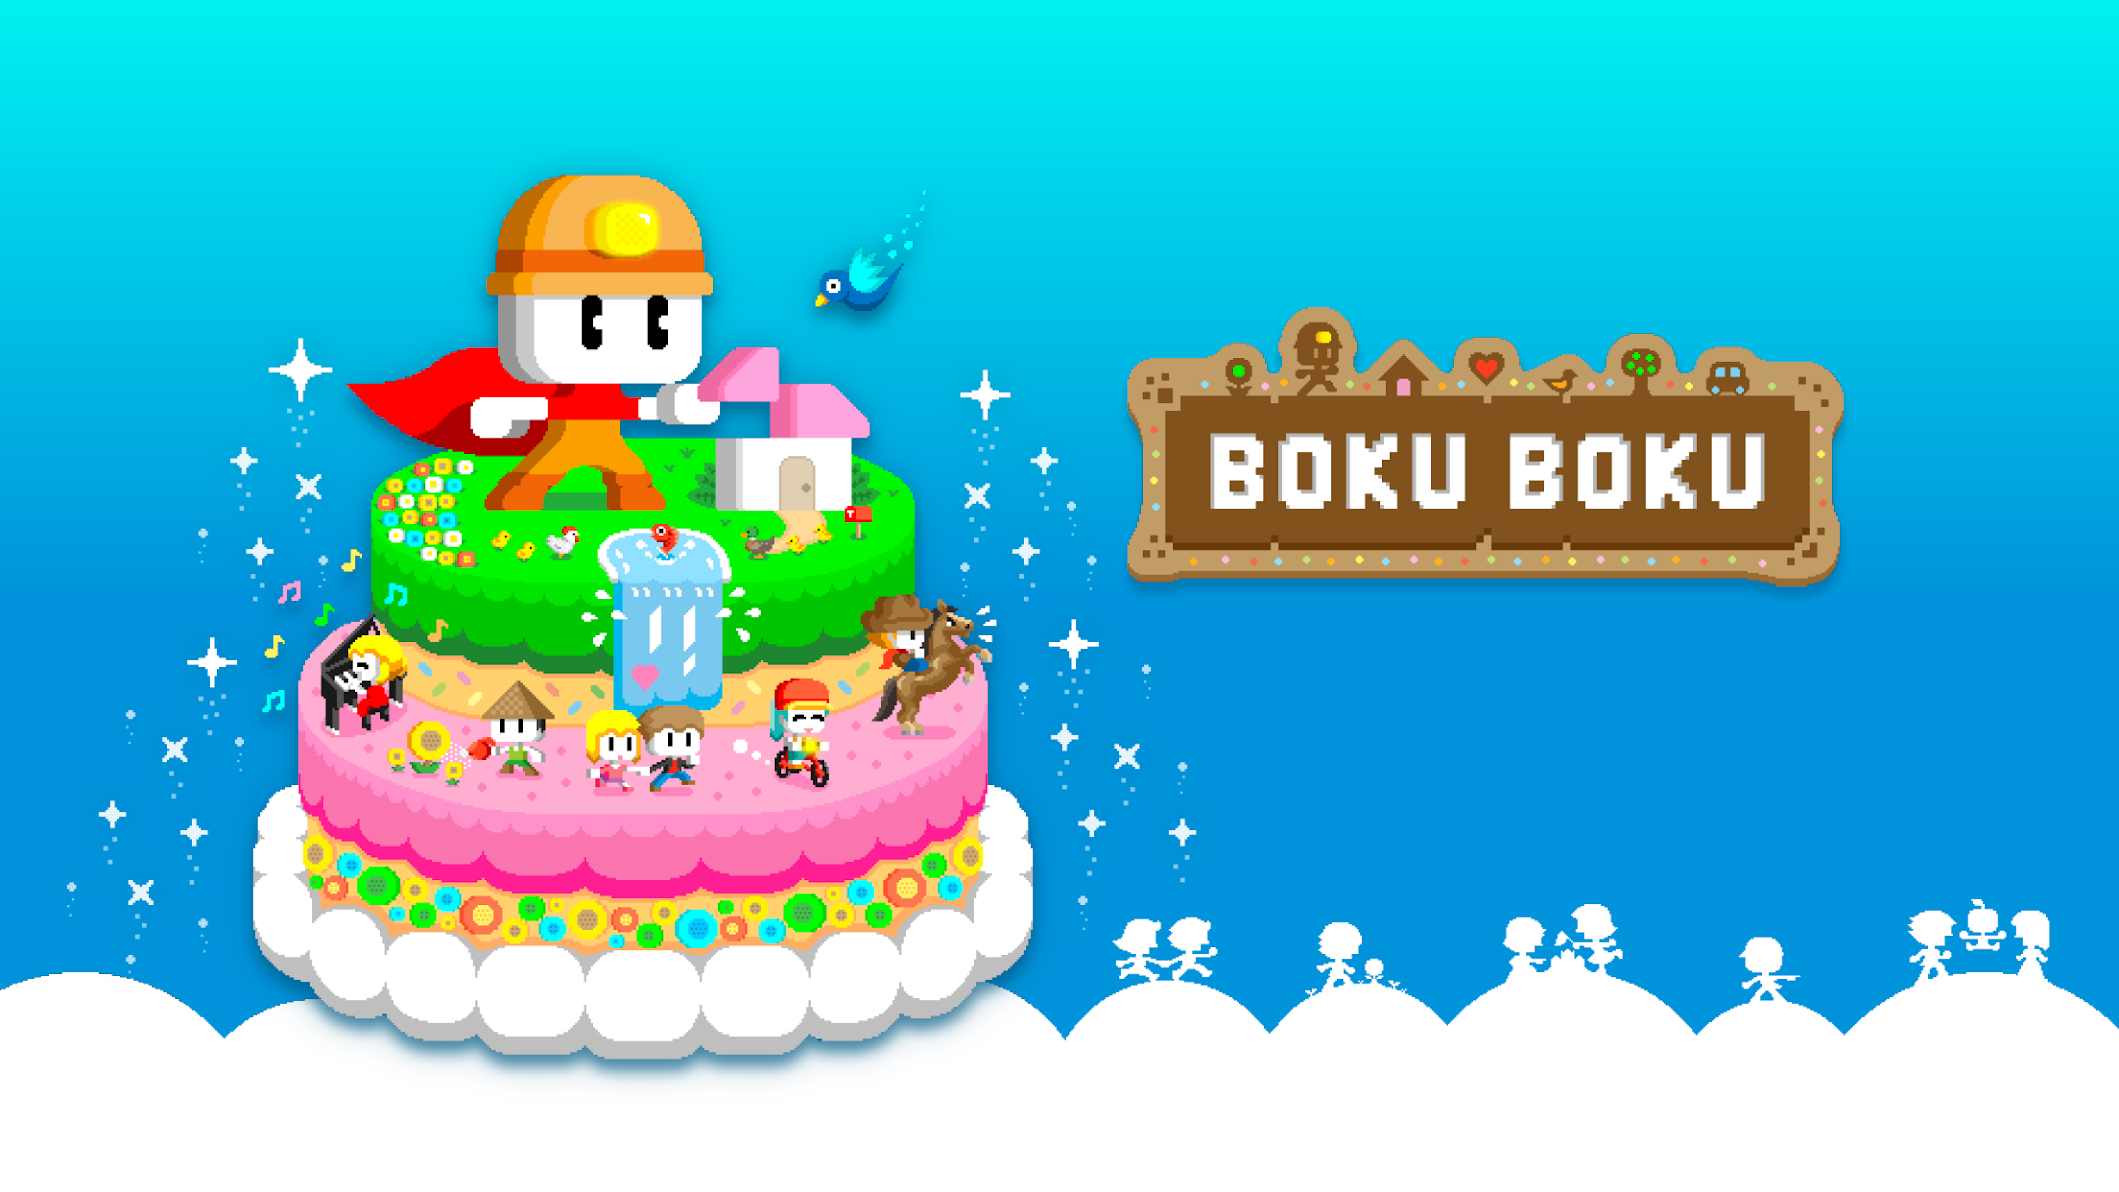 دانلود BOKU BOKU 1.0.221 – بازی شبیه سازی بوکو بوکو اندروید